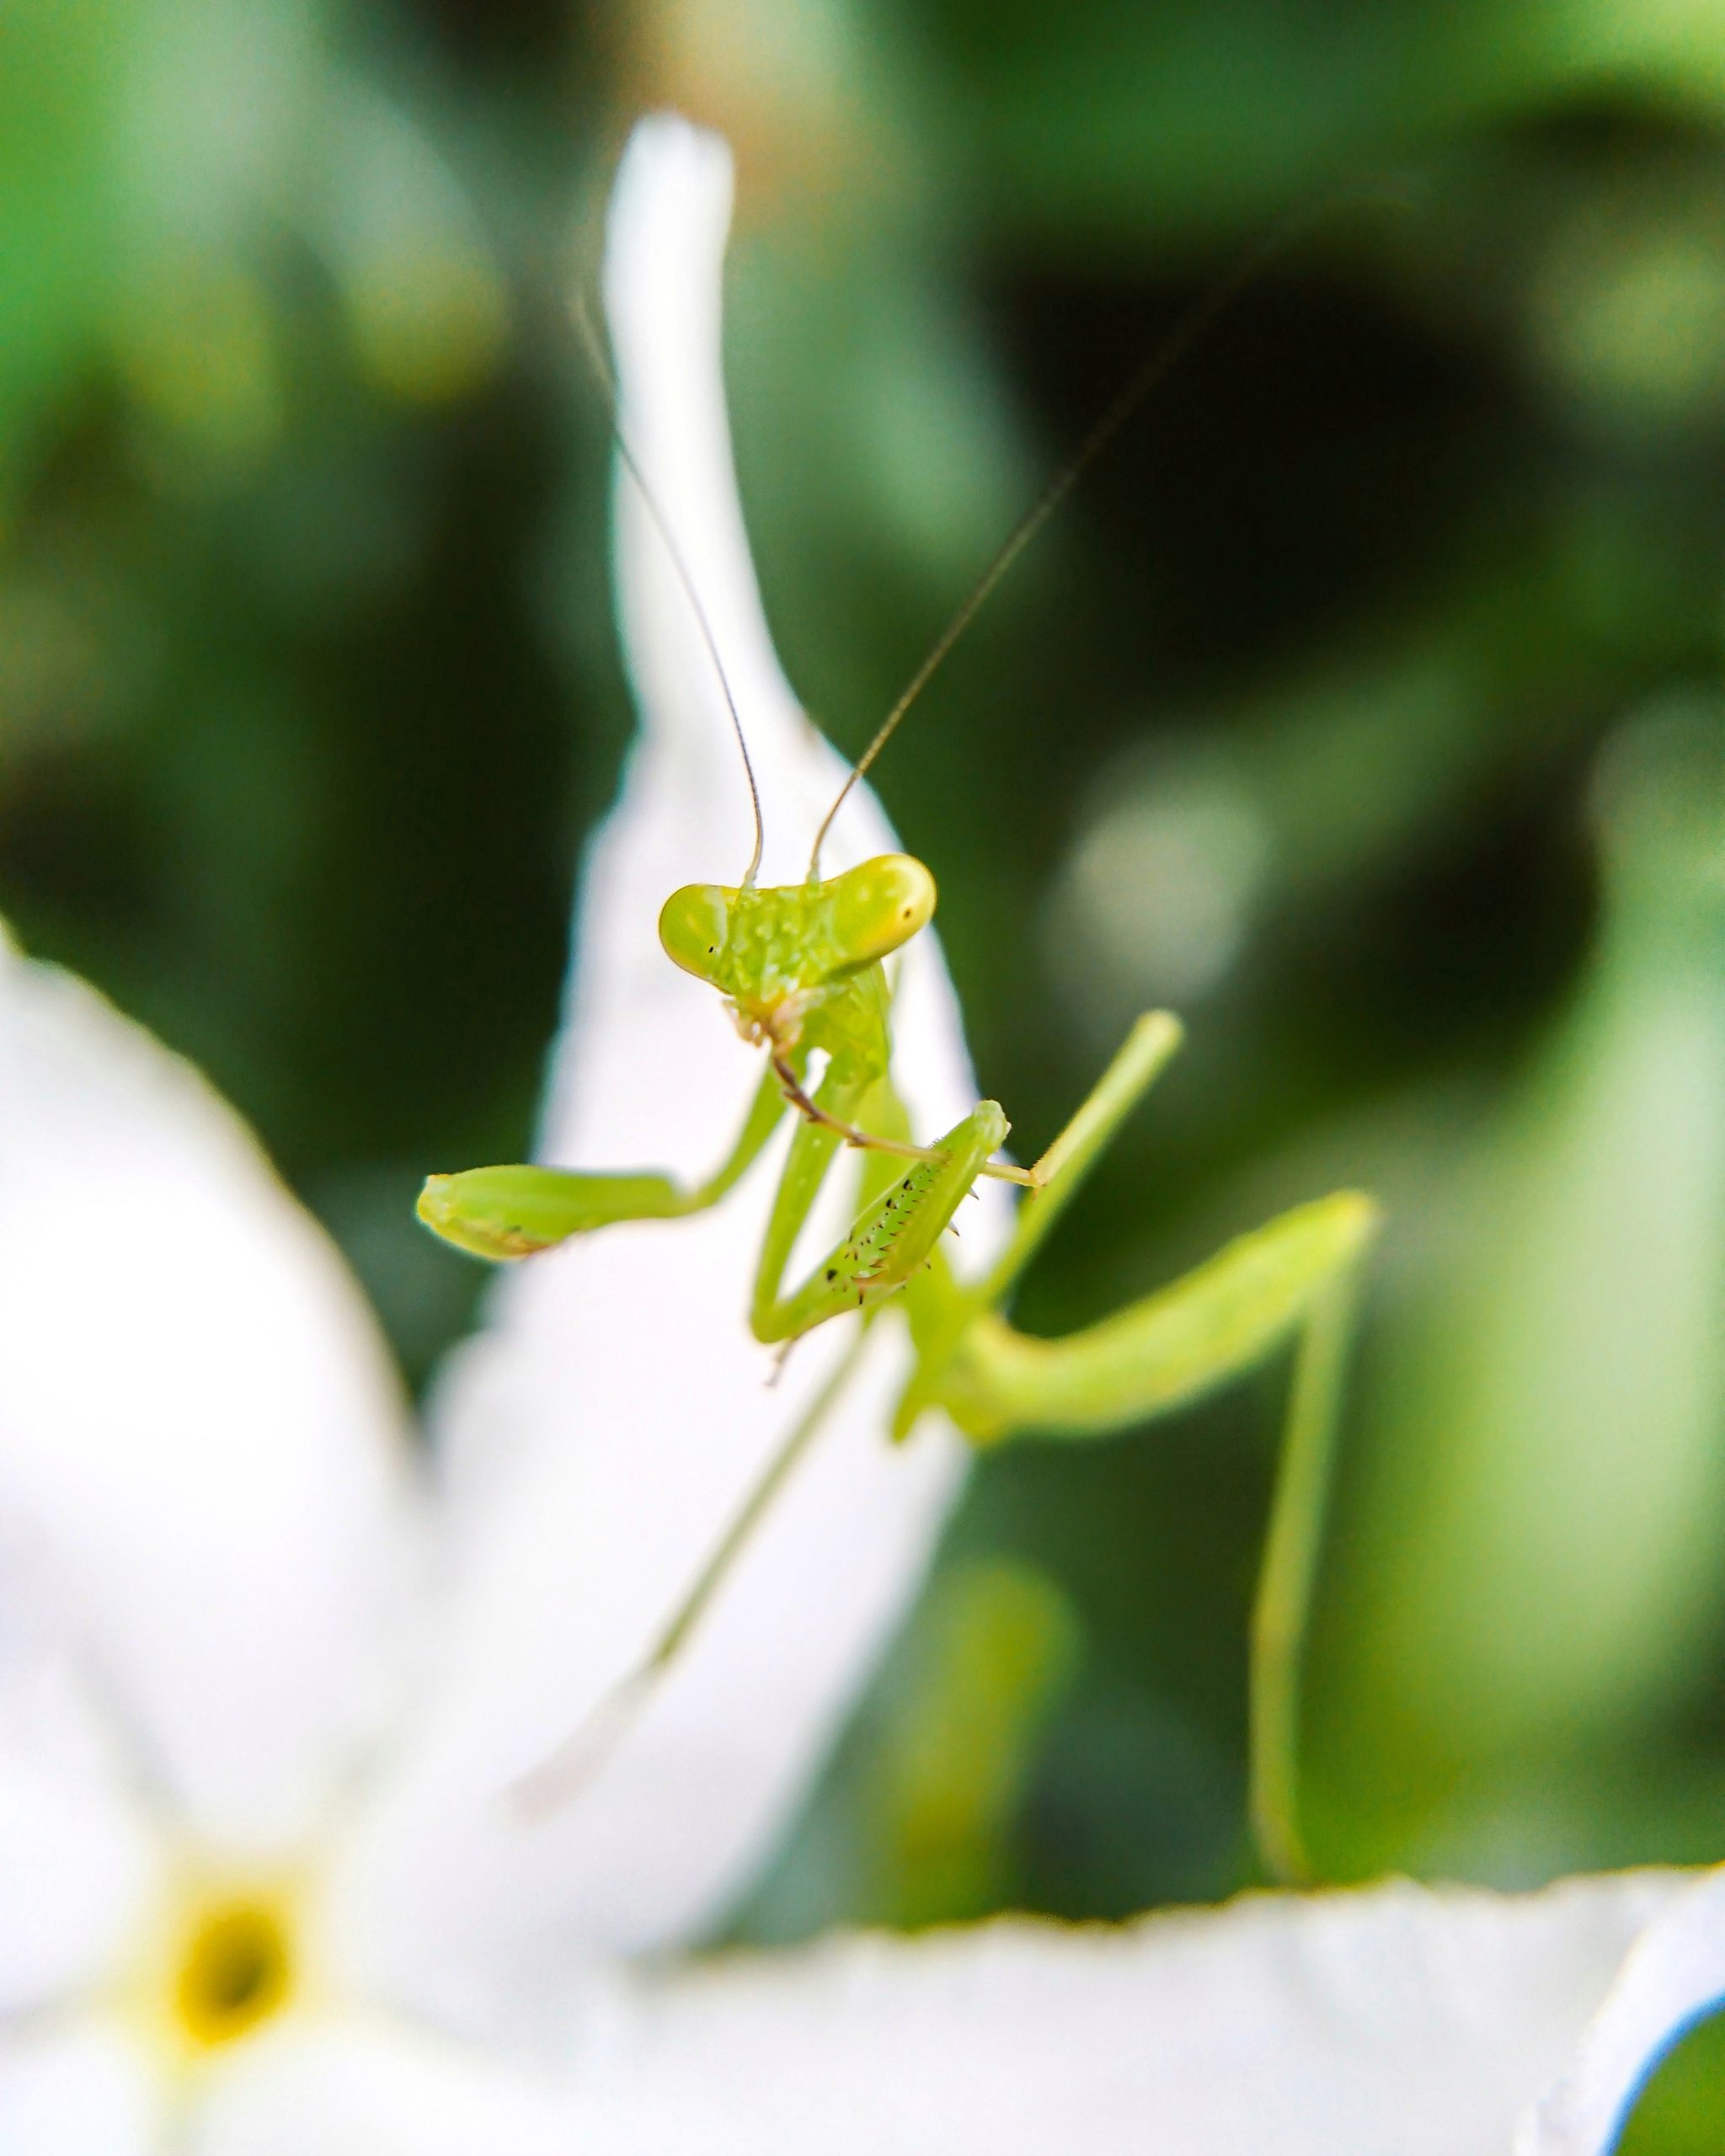 Praying Mantis in focus